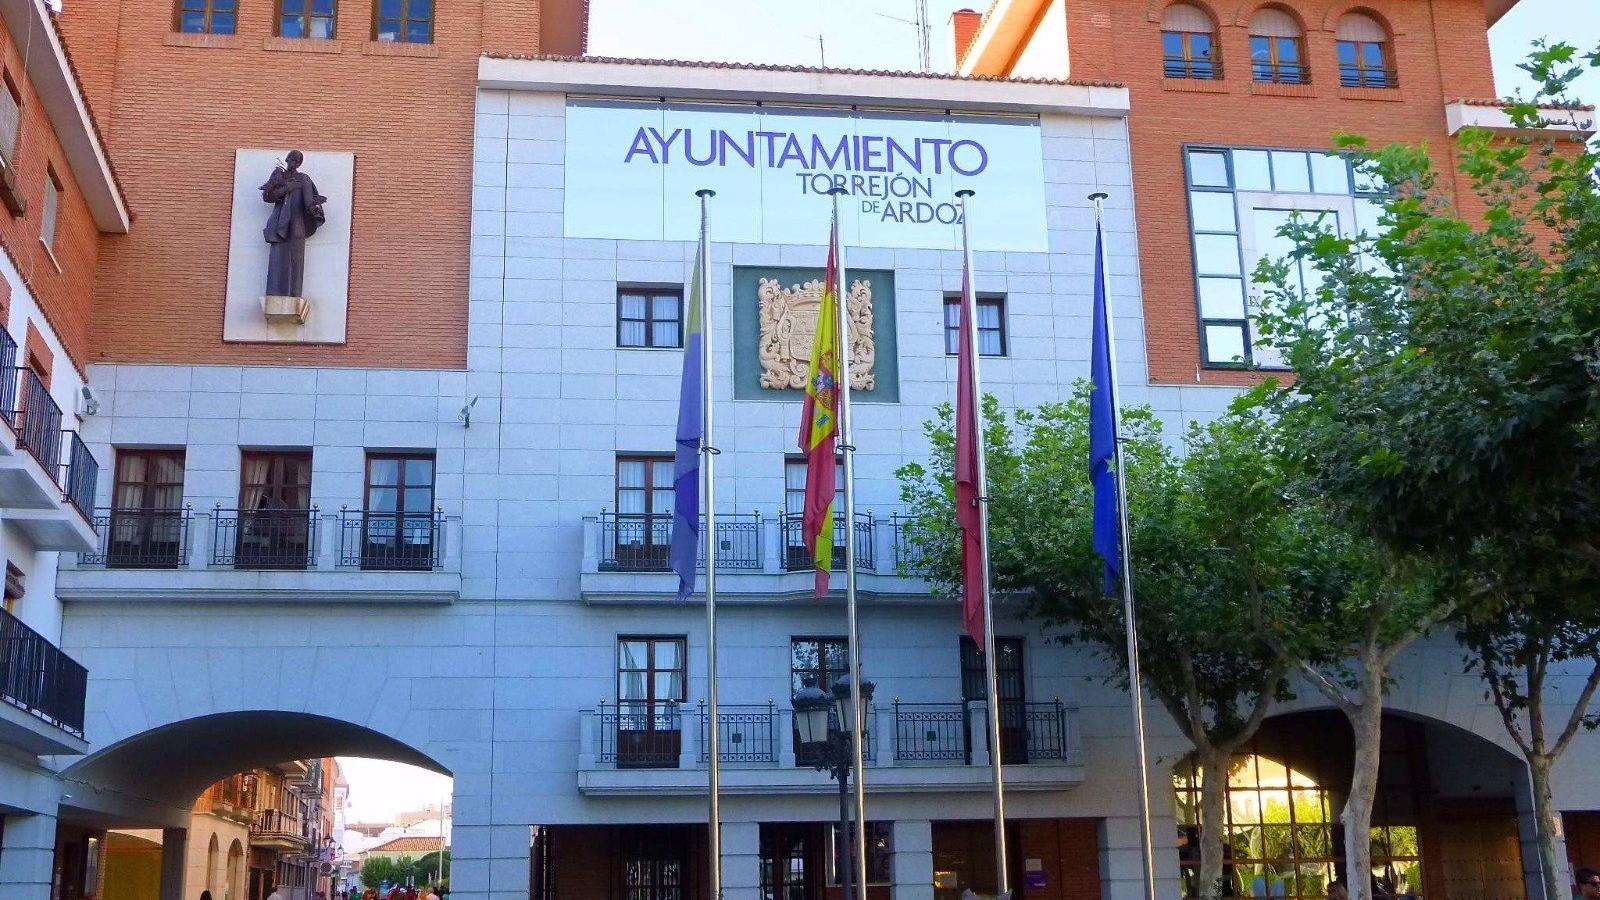 Una senda peatonal comunicará el Polígono Los Almendros y el casco urbano de Torrejón